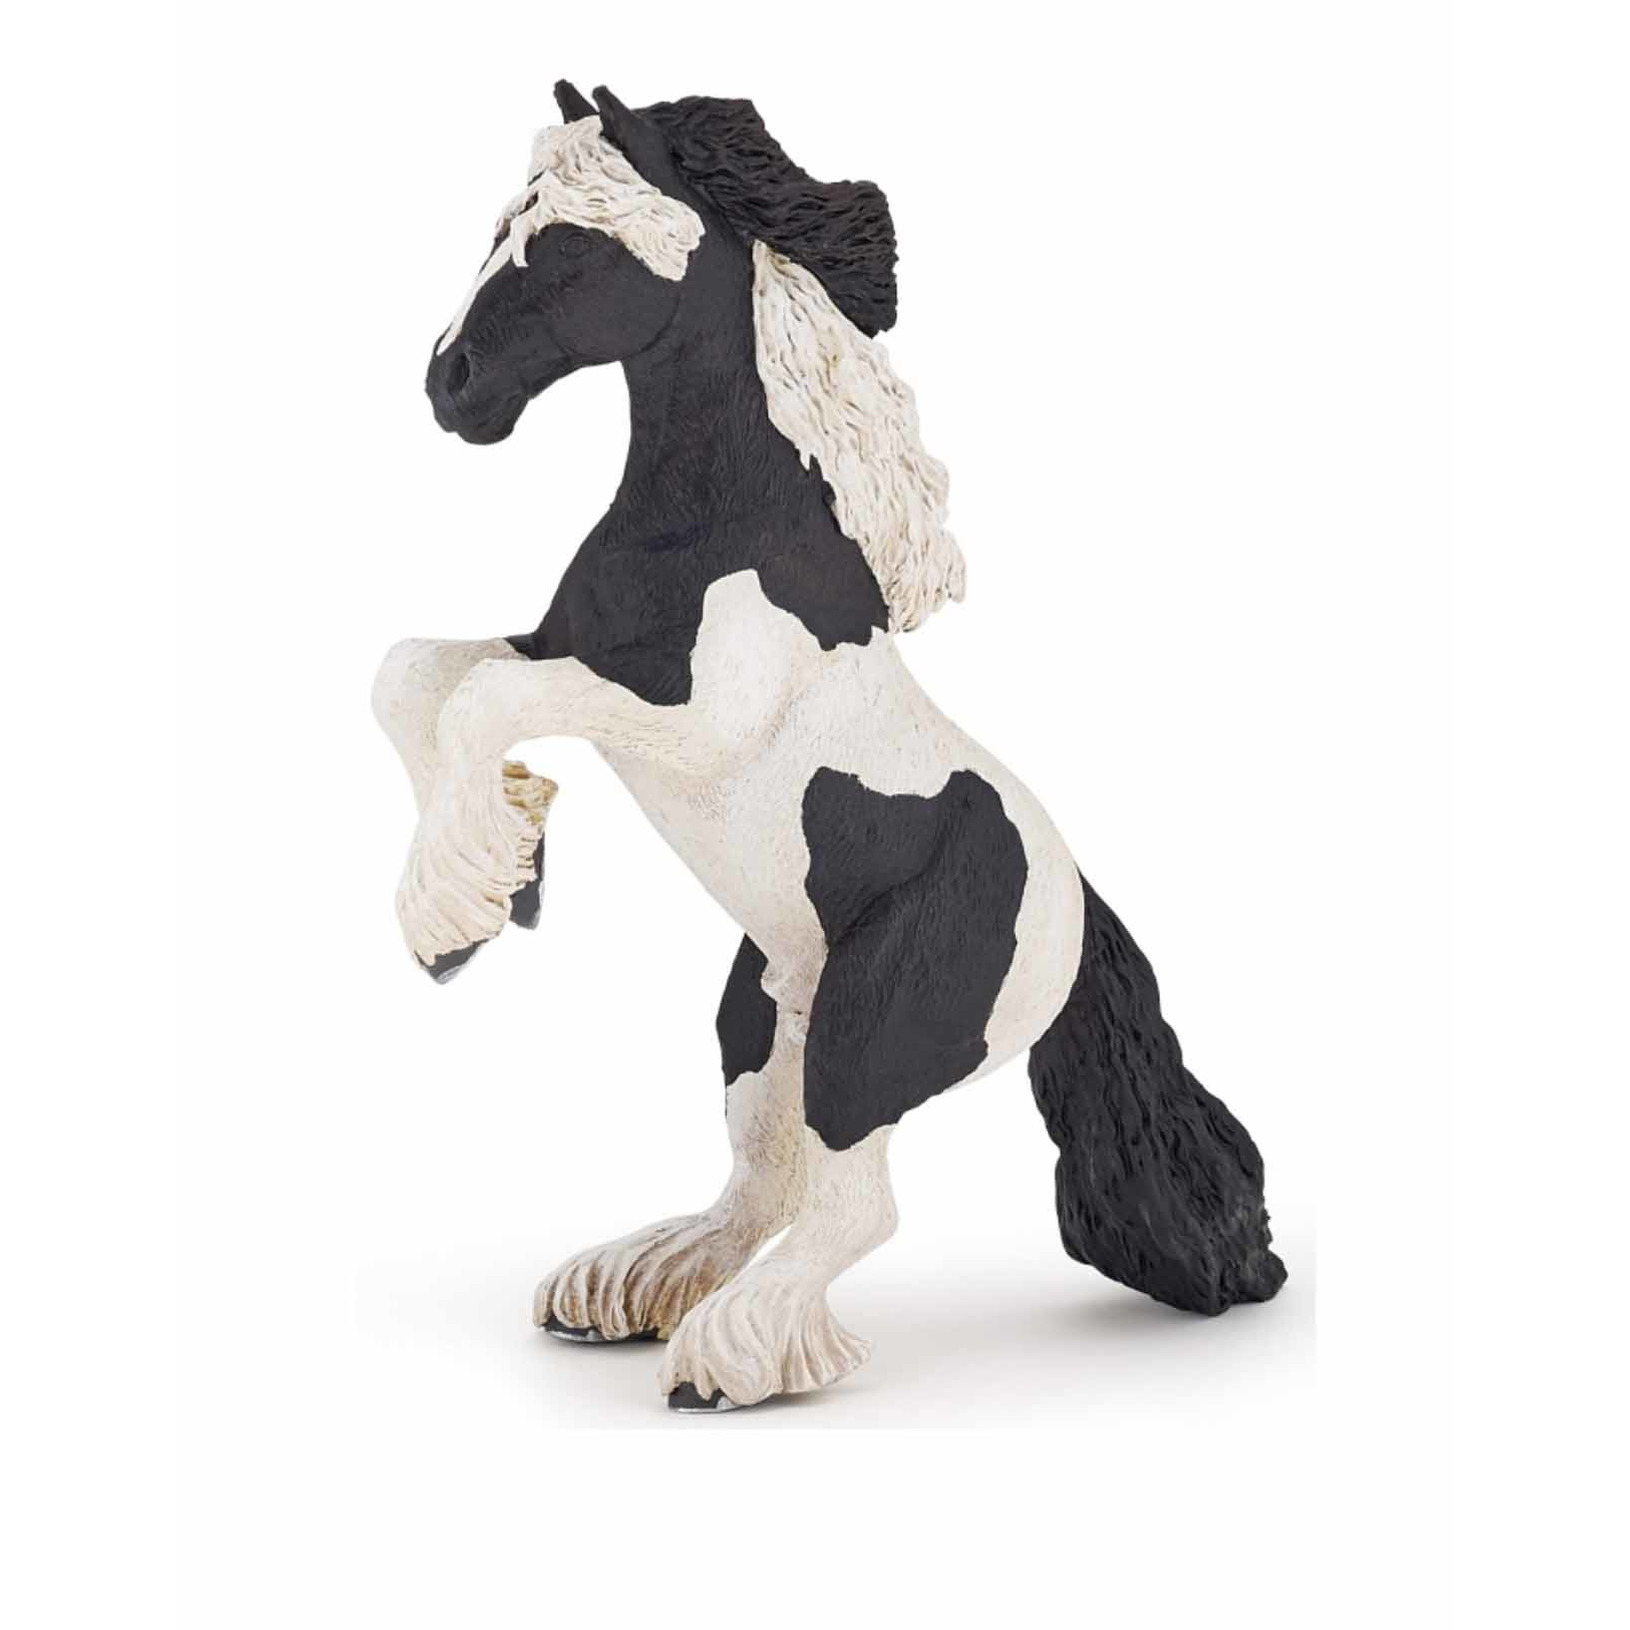 Plastic speelgoed figuur steigerend paard 16 cm